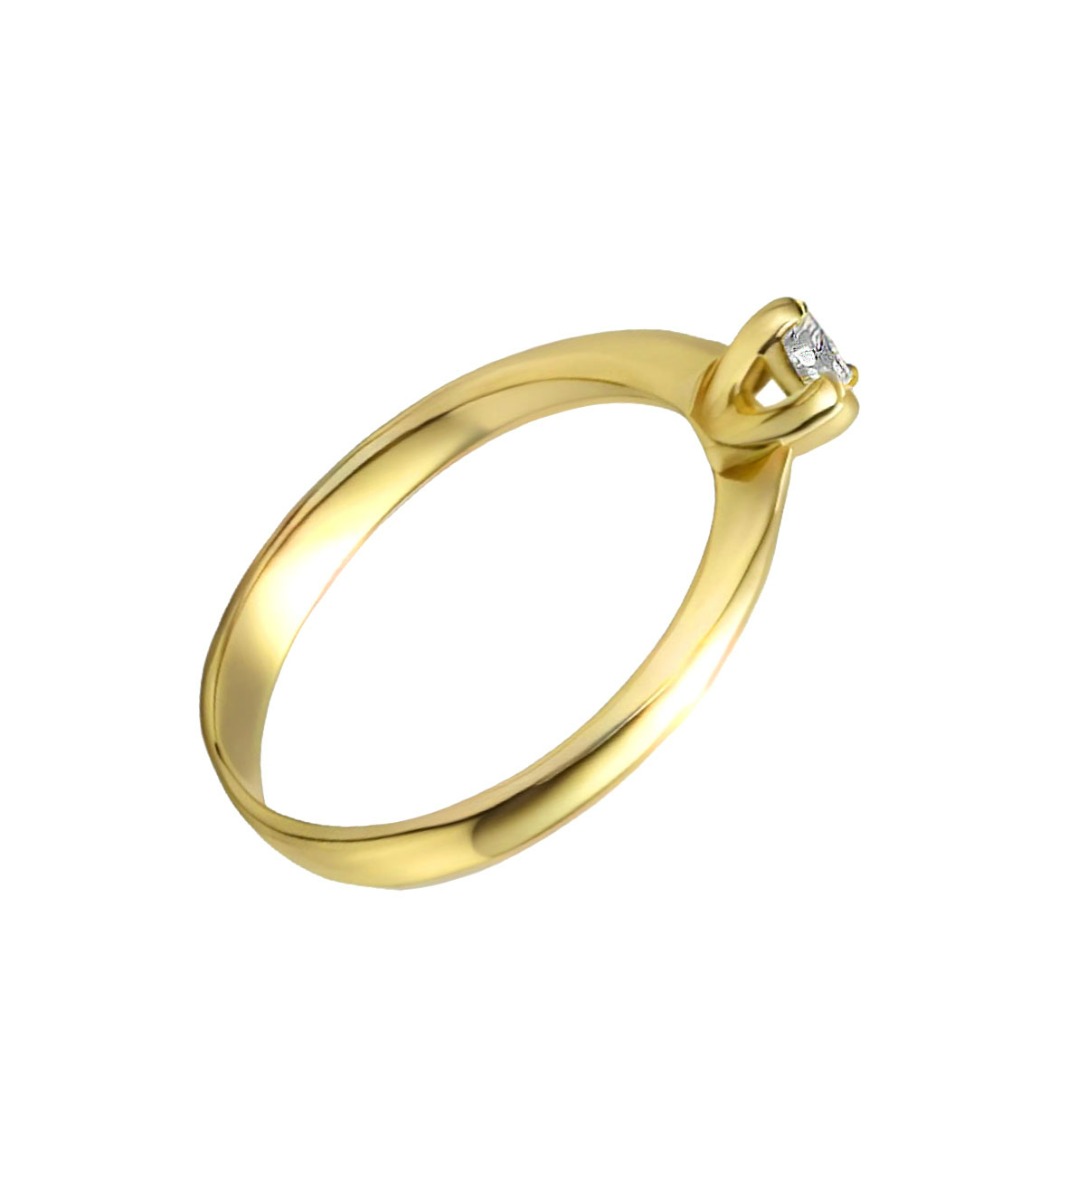 solitario oro amarillo 18K con diamante talla brillante foto lateral precio barato joyeria online 192_Z0258-OA_01